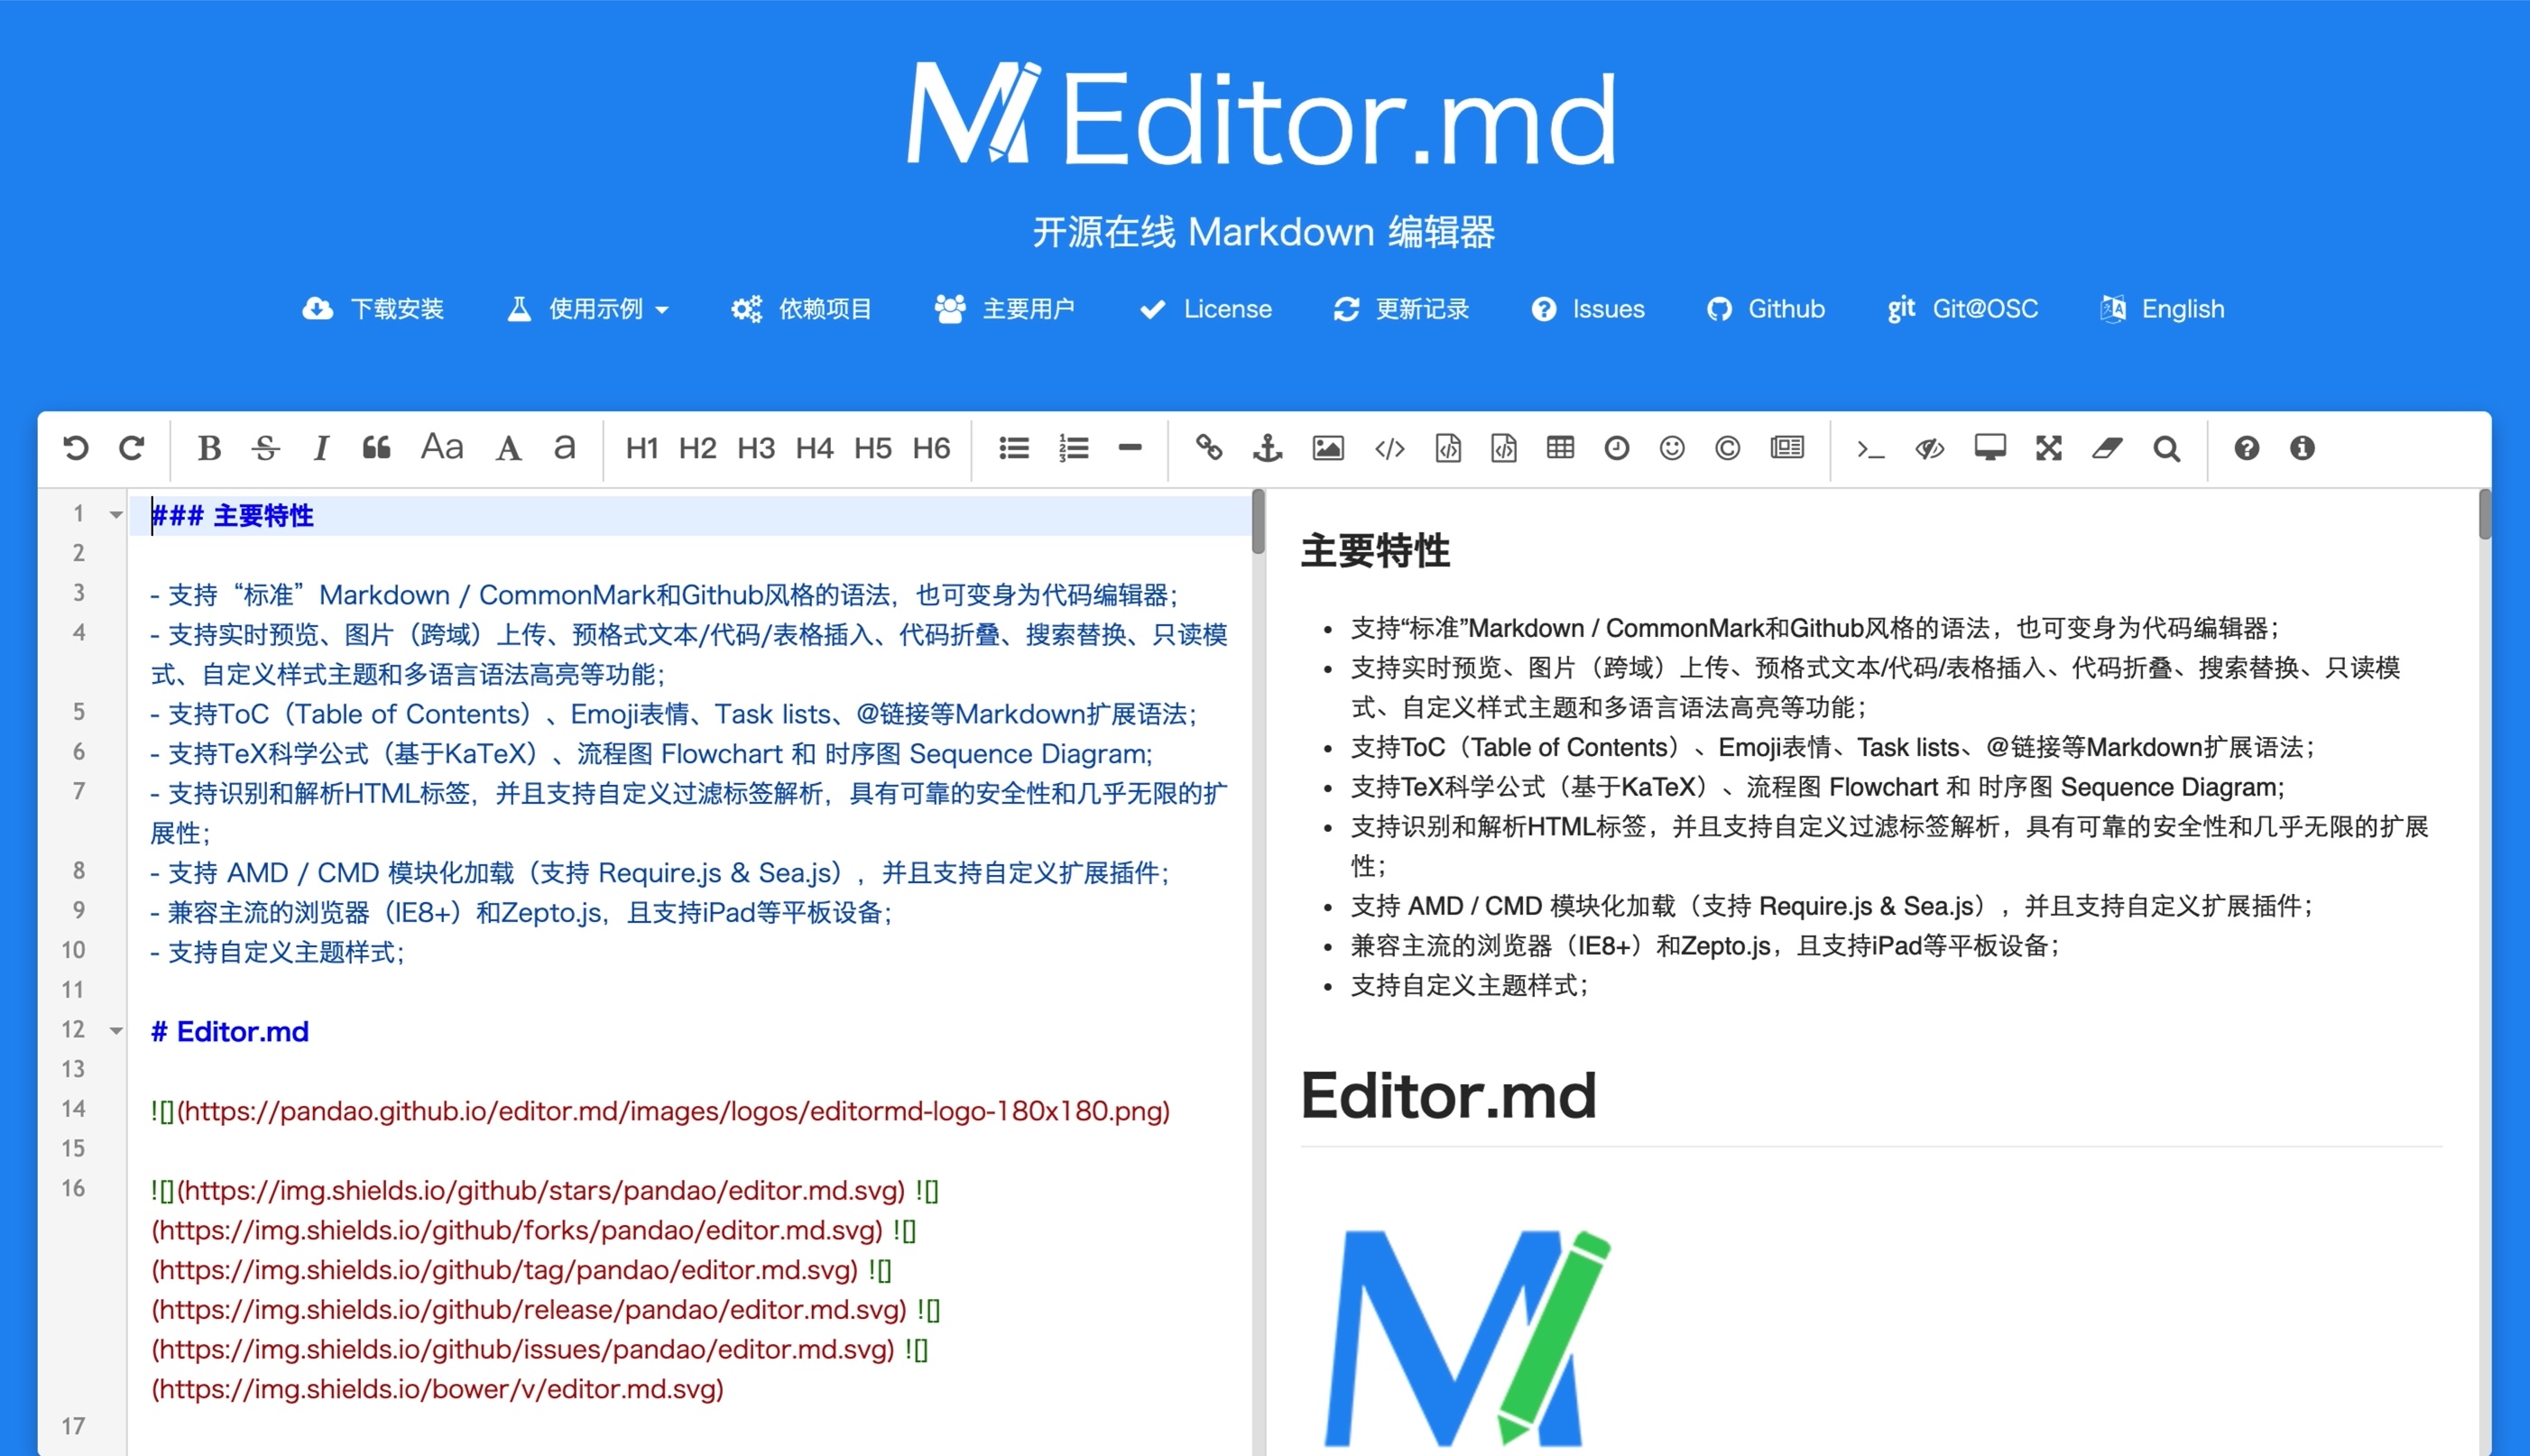 Editor.md